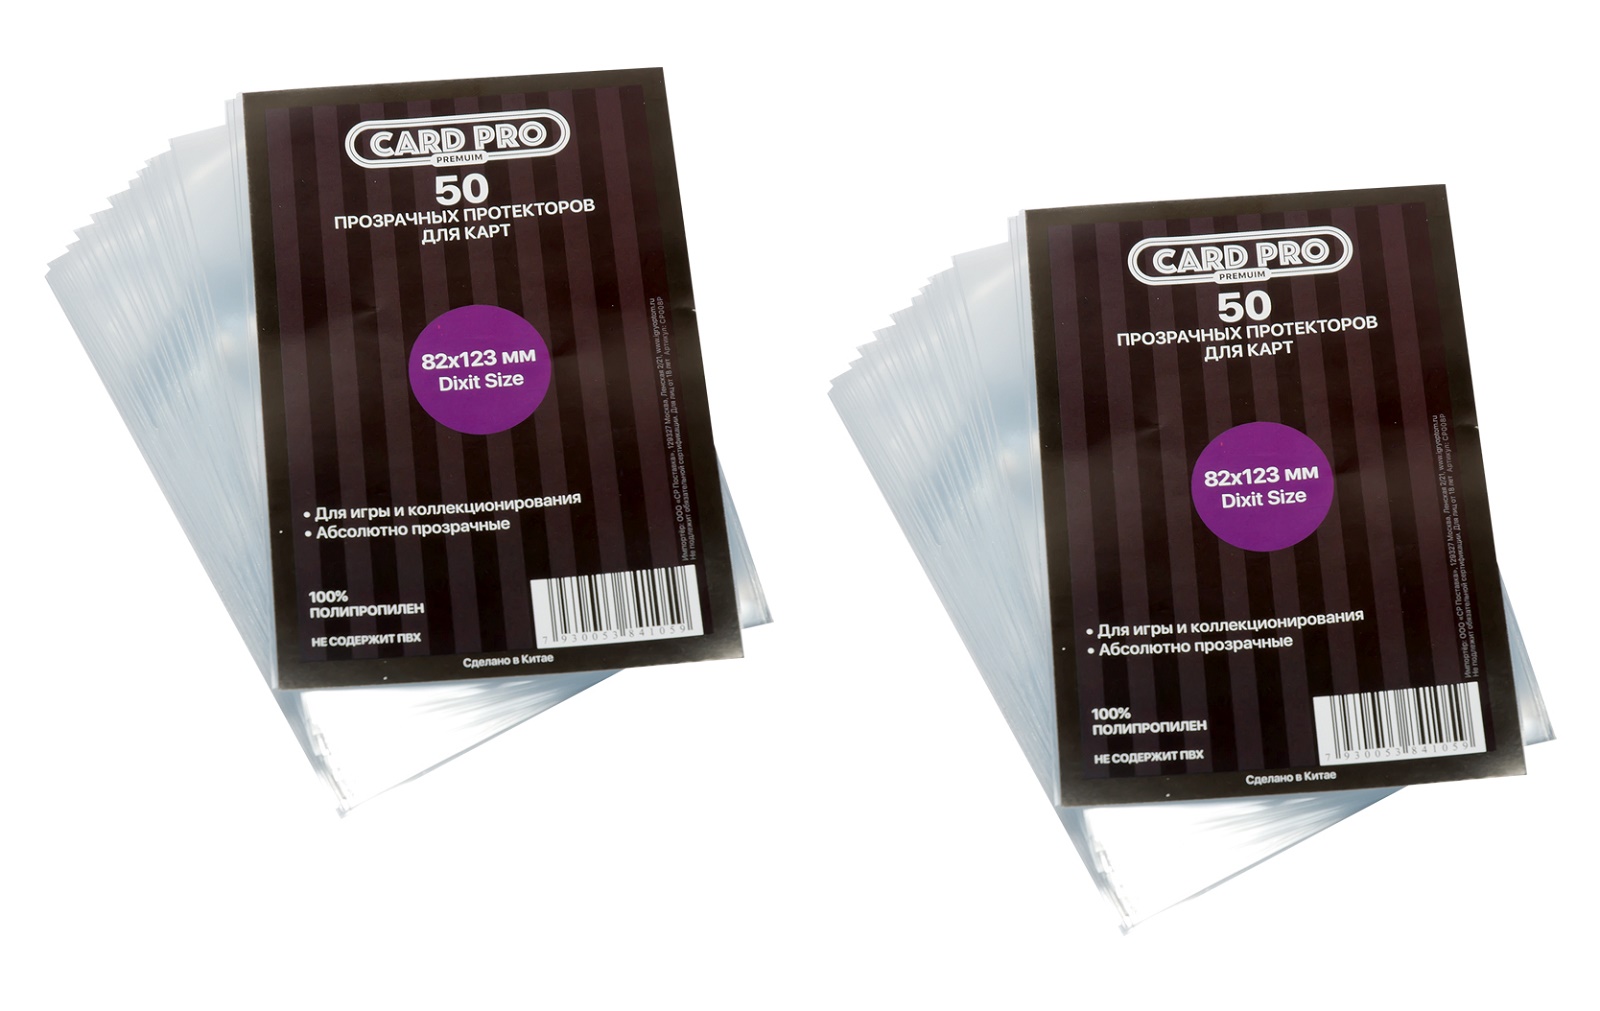 Протекторы Card-Pro PREMIUM Dixit Size для настольных игр 82x123 мм. 2 пачки прозрачные протекторы card pro ccg large для кки 89x130 мм 2 пачки